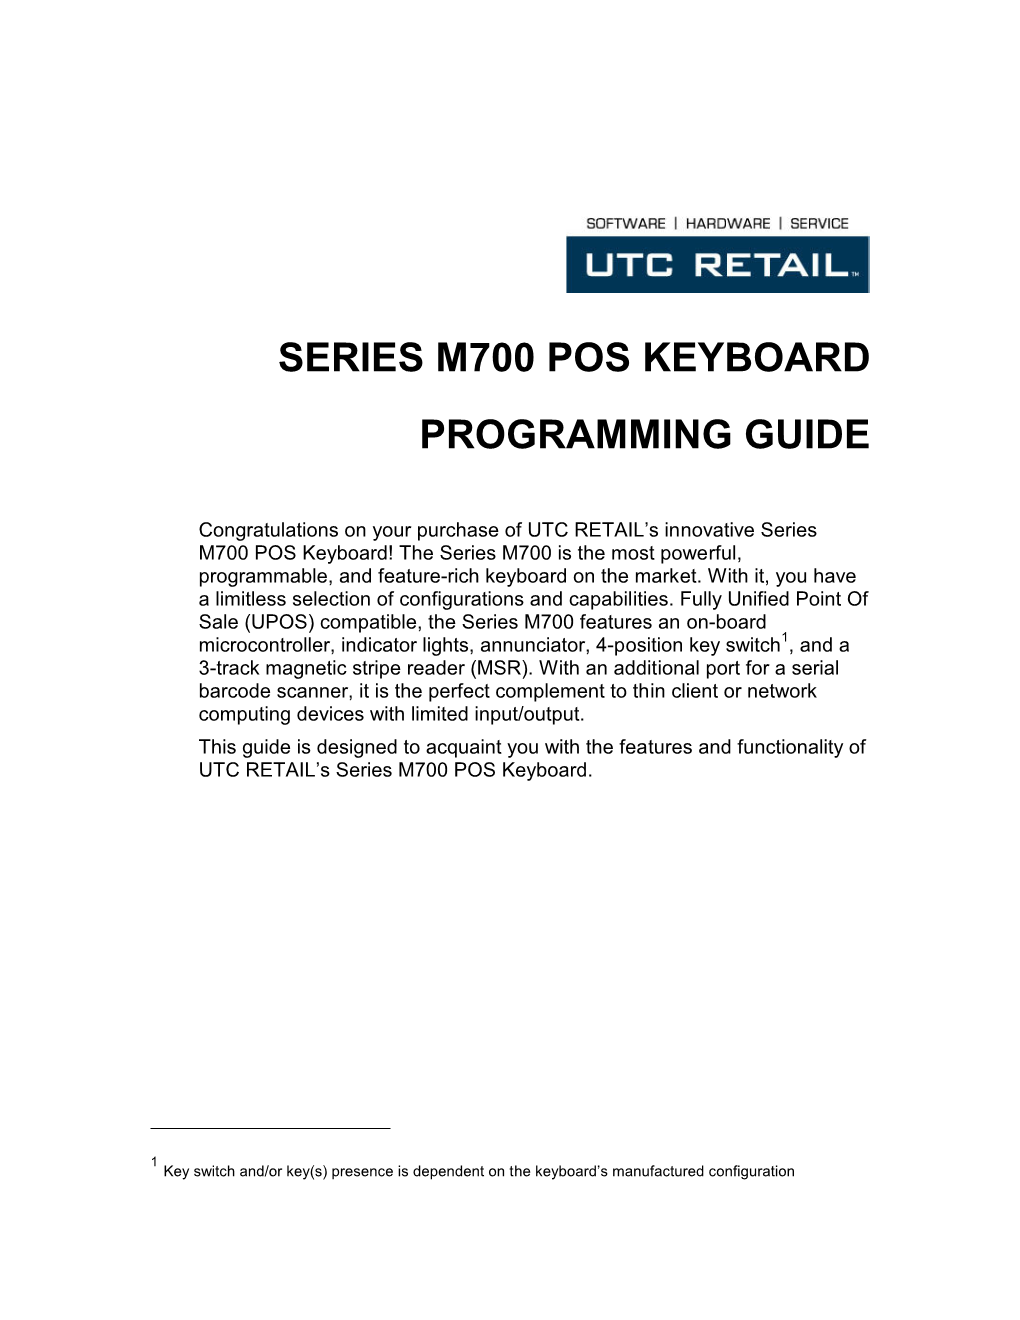 Series M700 Pos Keyboard Programming Guide